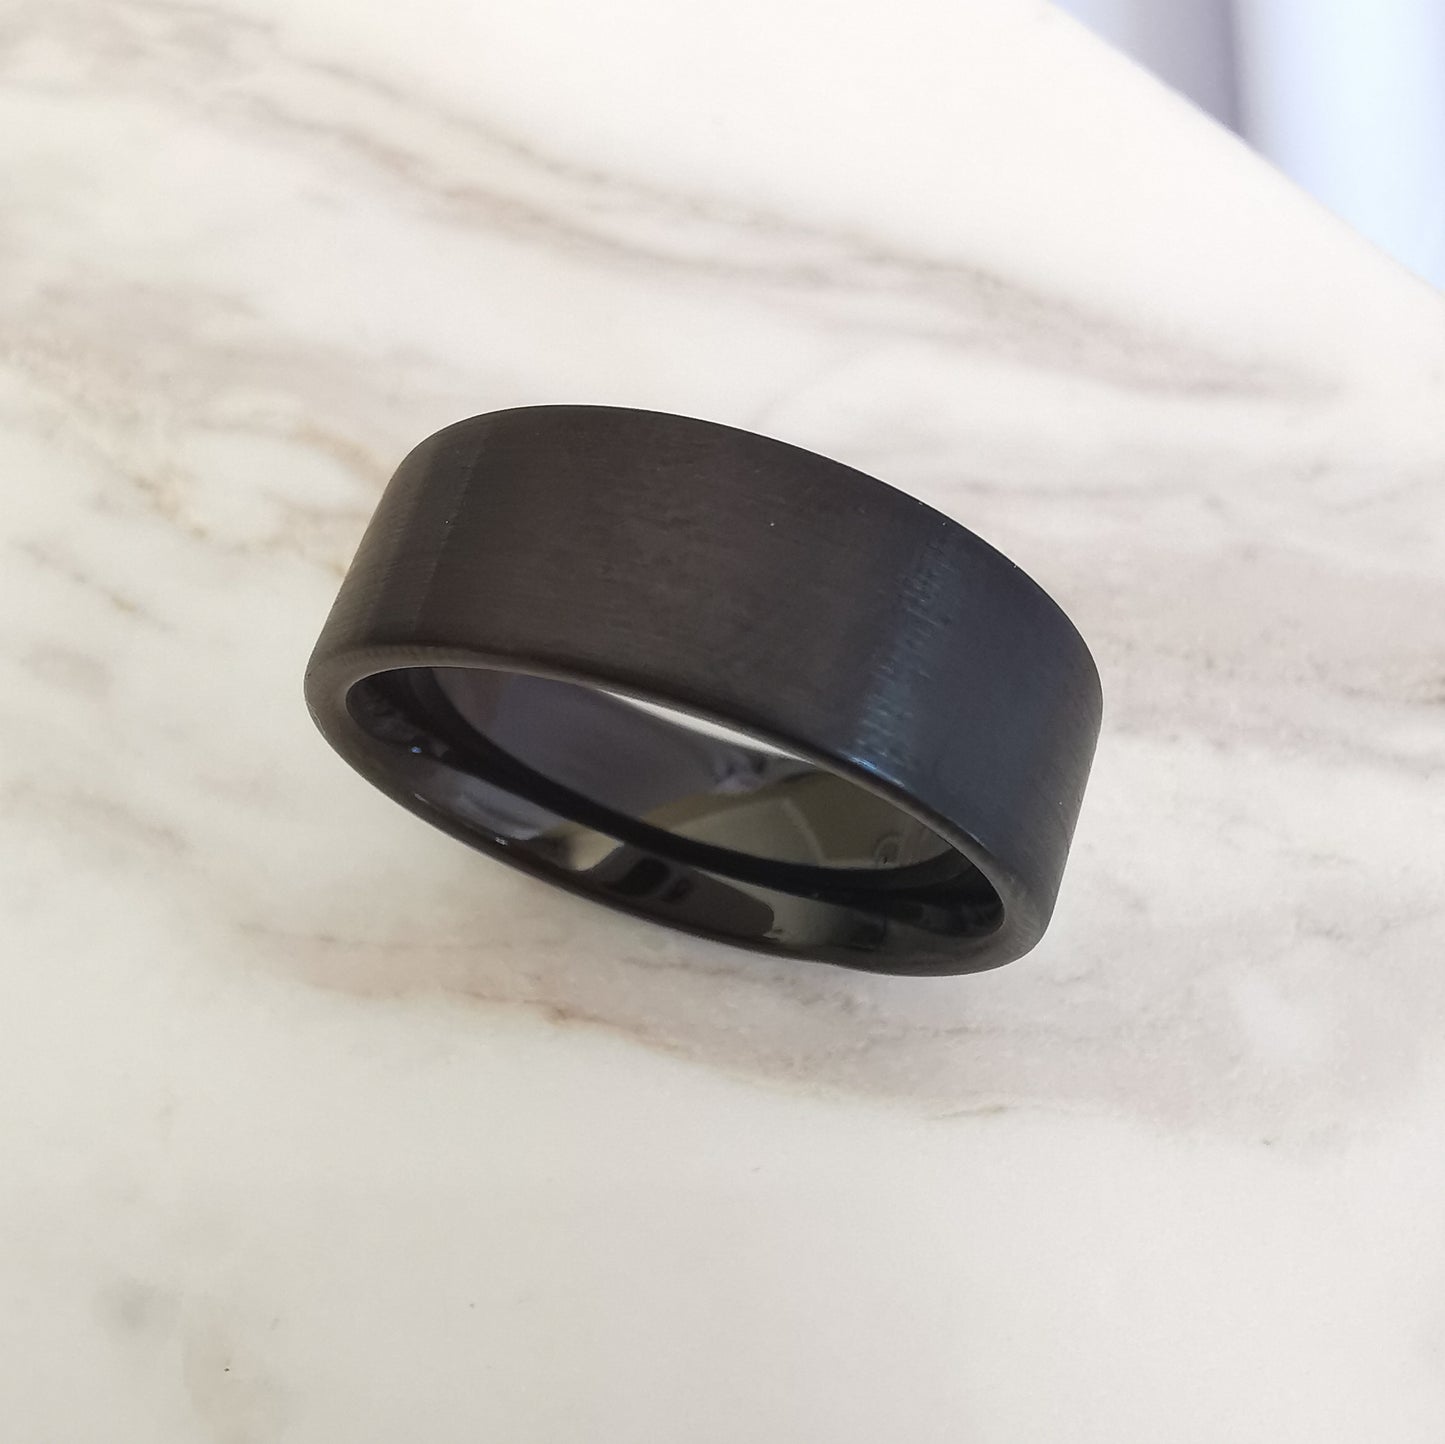 8mm Matt Black Tungsten Ring